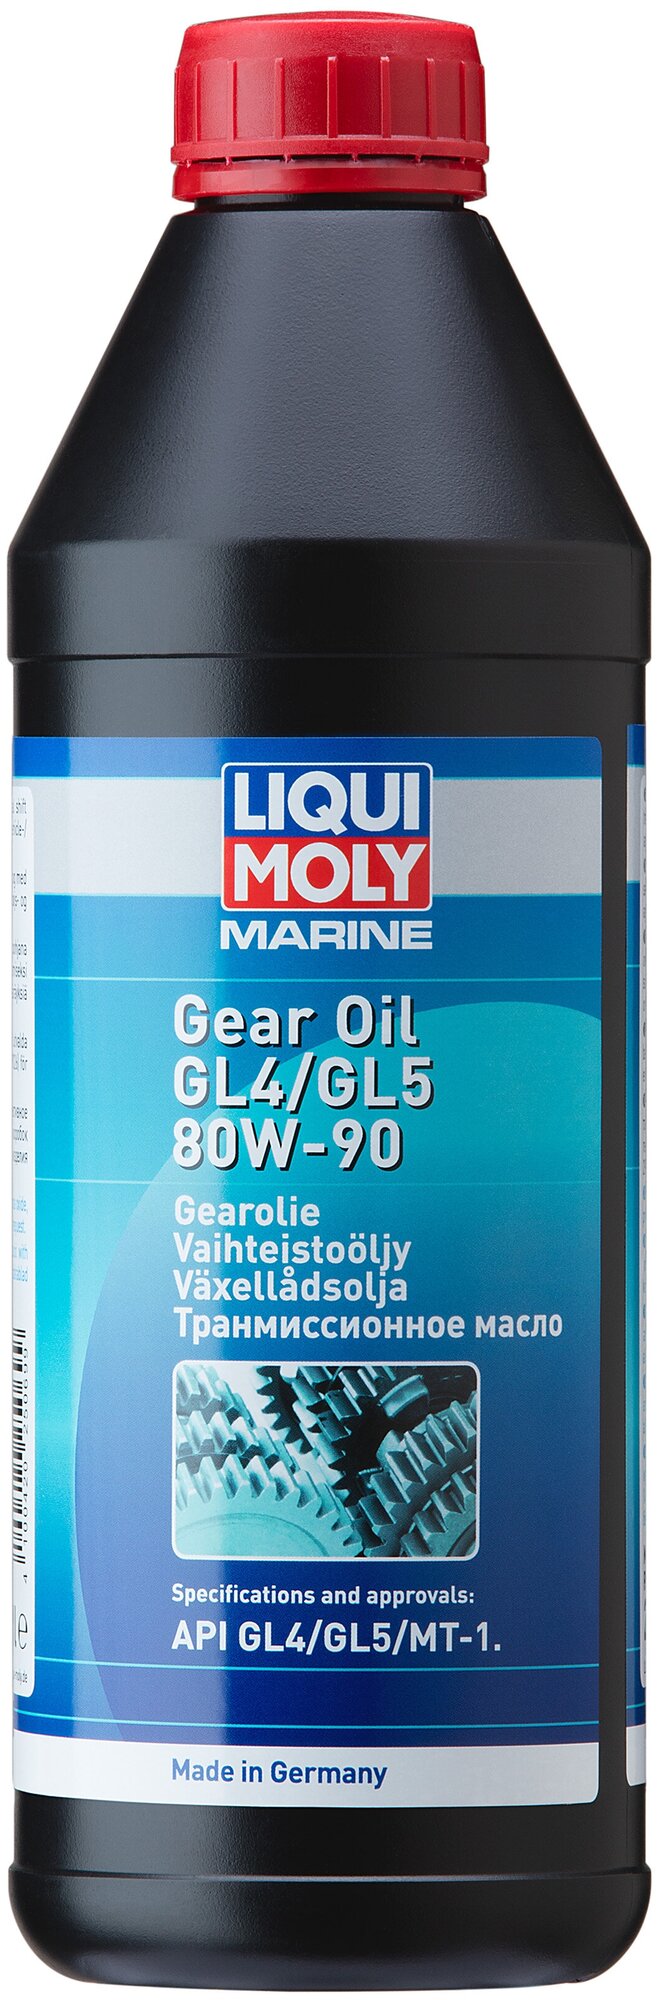  . /.. marine gear oil 80w-90 gl-4/gl-5/mt-1 (1), liqui moly, 25069